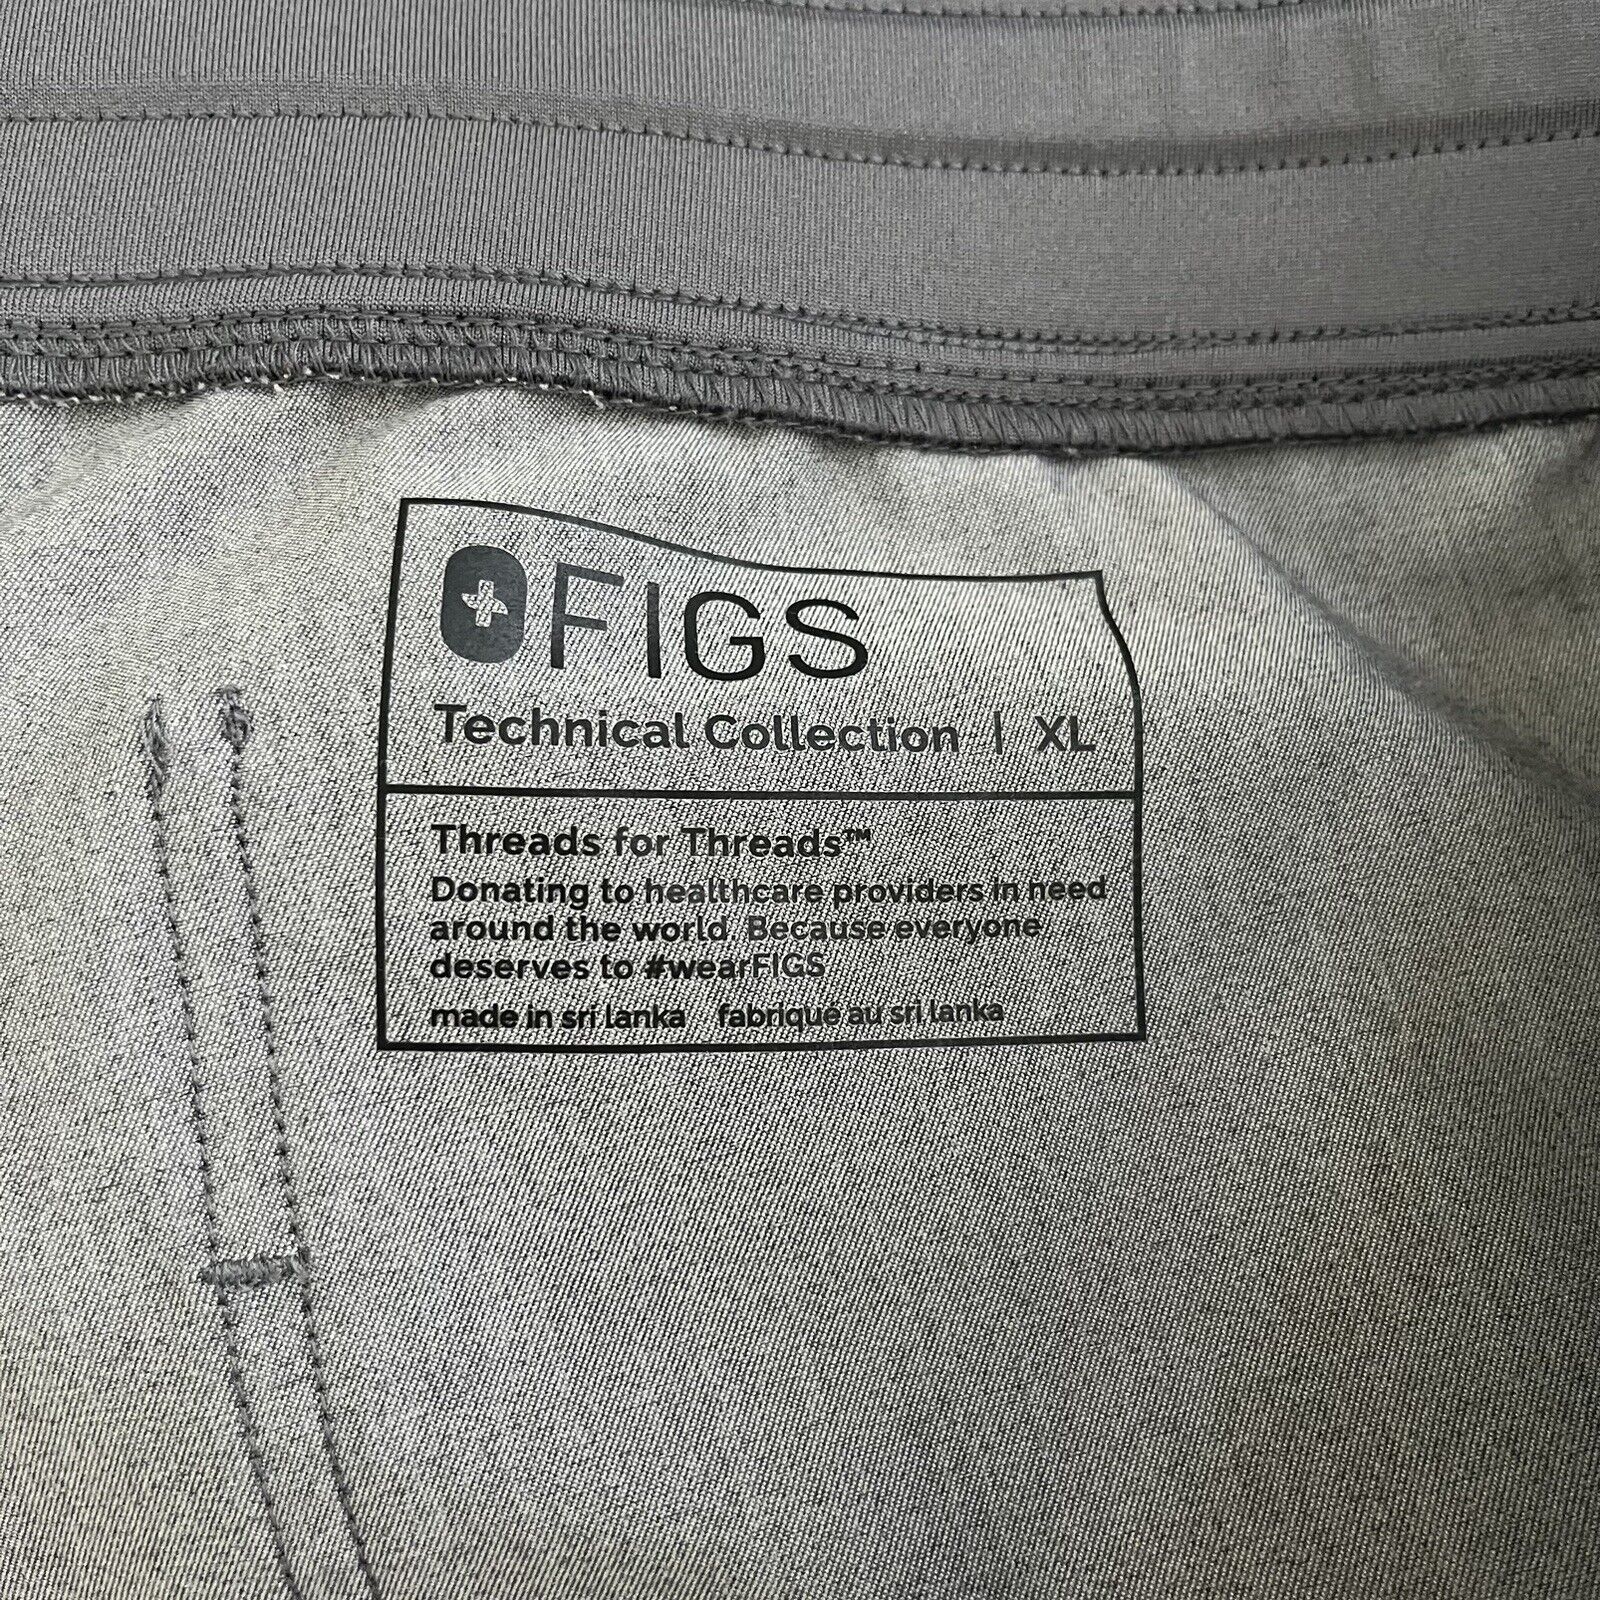 Figs Zamora Jogger Scrub Pants Graphite Gray XL - image 4